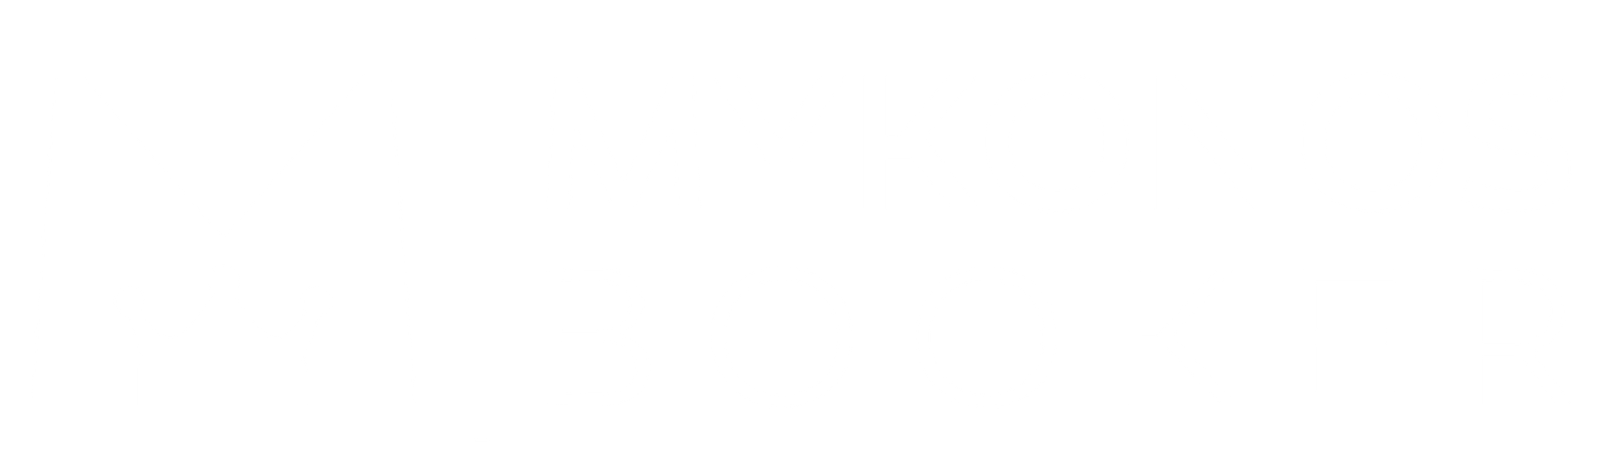 mykonosbooker from www.mykonosbooker.com